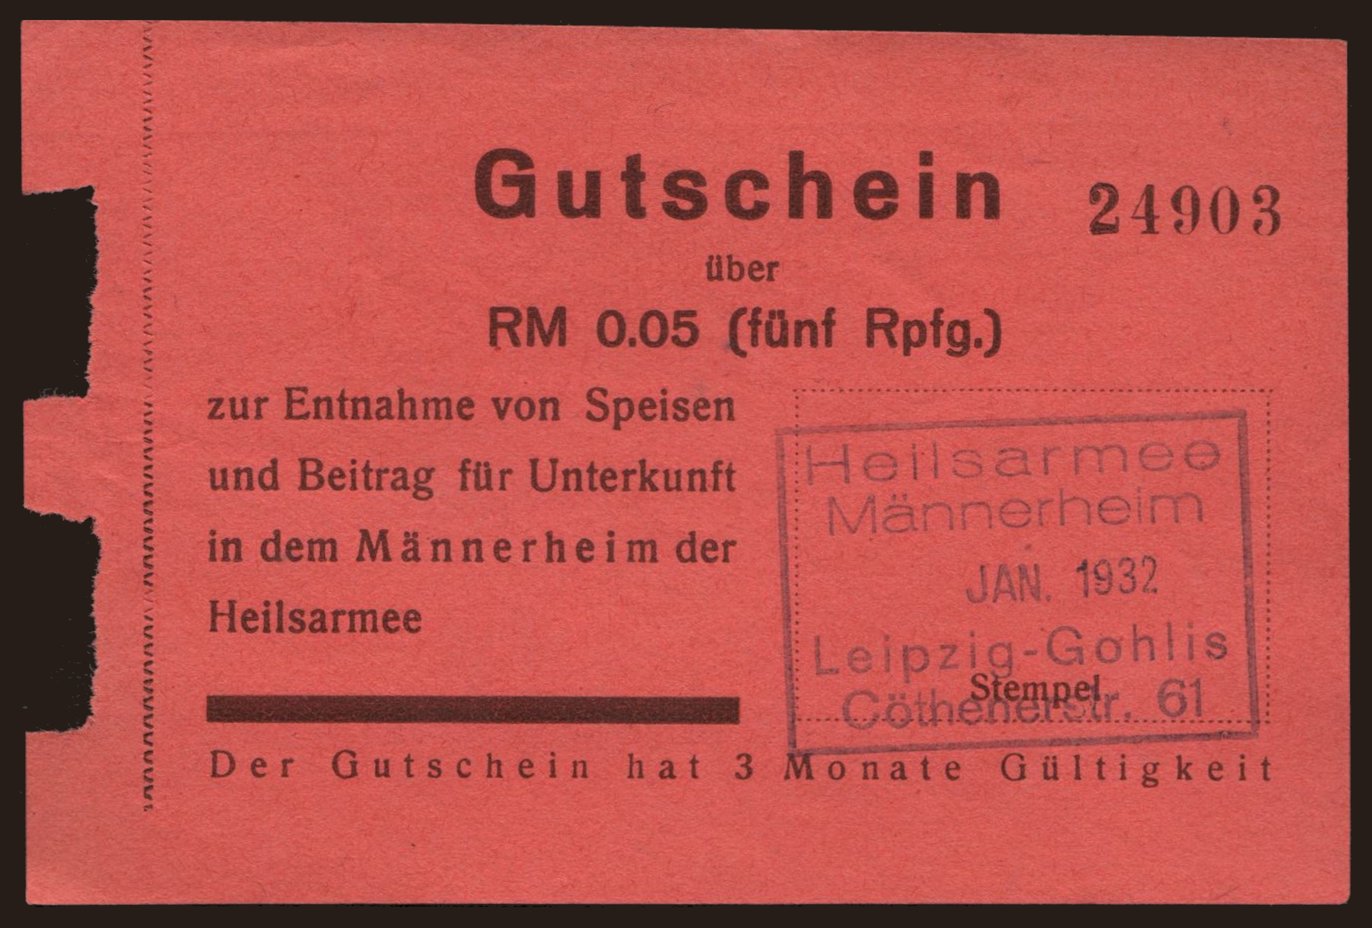 Leipzig-Gohlis/ Heilsarmee Männerheim, 5 Reichspfennig, 1932